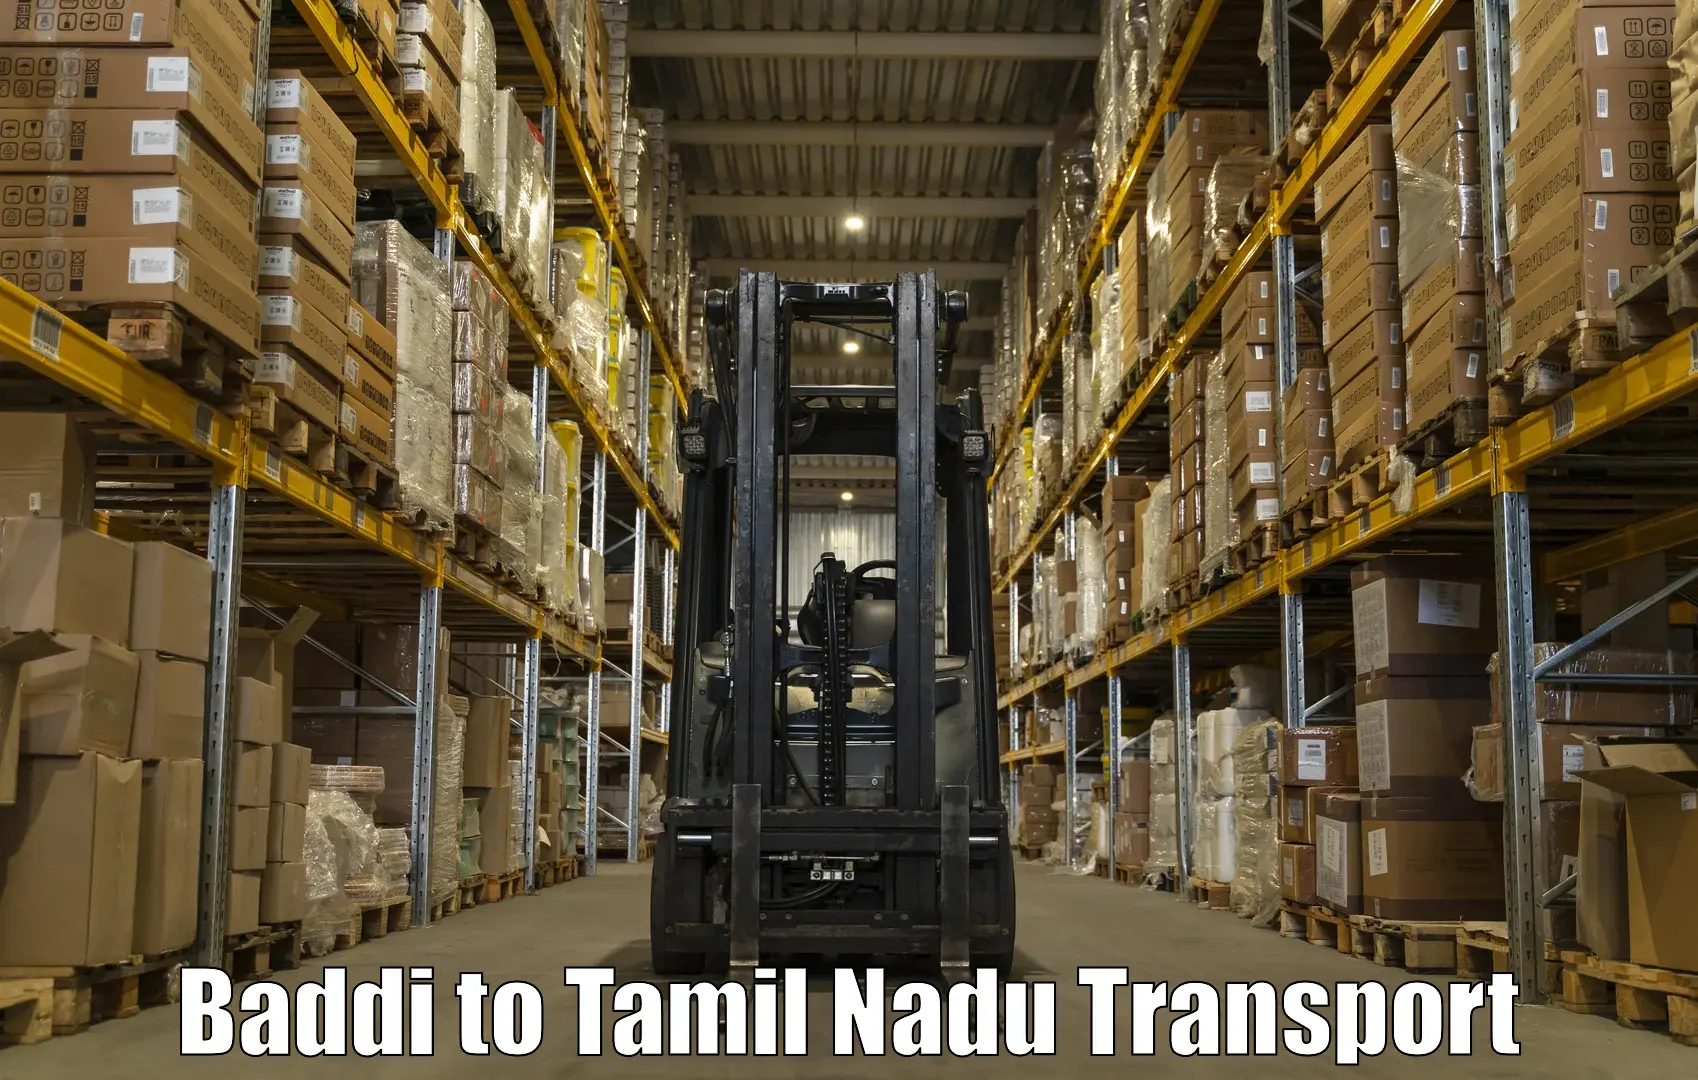 Logistics transportation services Baddi to Gobichettipalayam